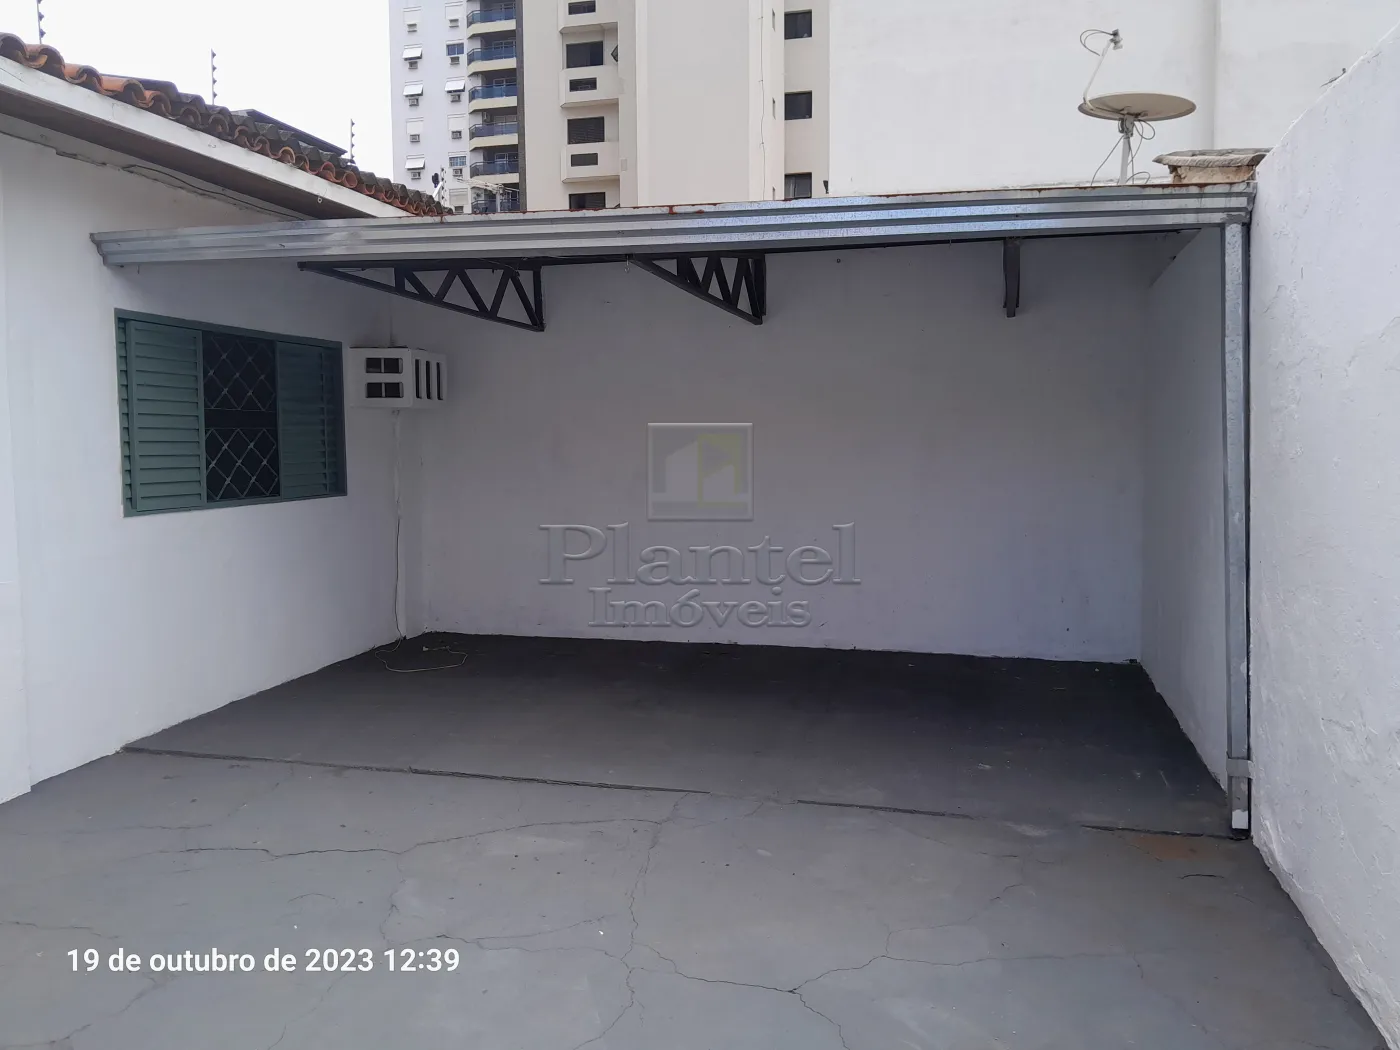 Imobiliária Ribeirão Preto - Plantel Imóveis - Casa - Centro - Ribeirão Preto